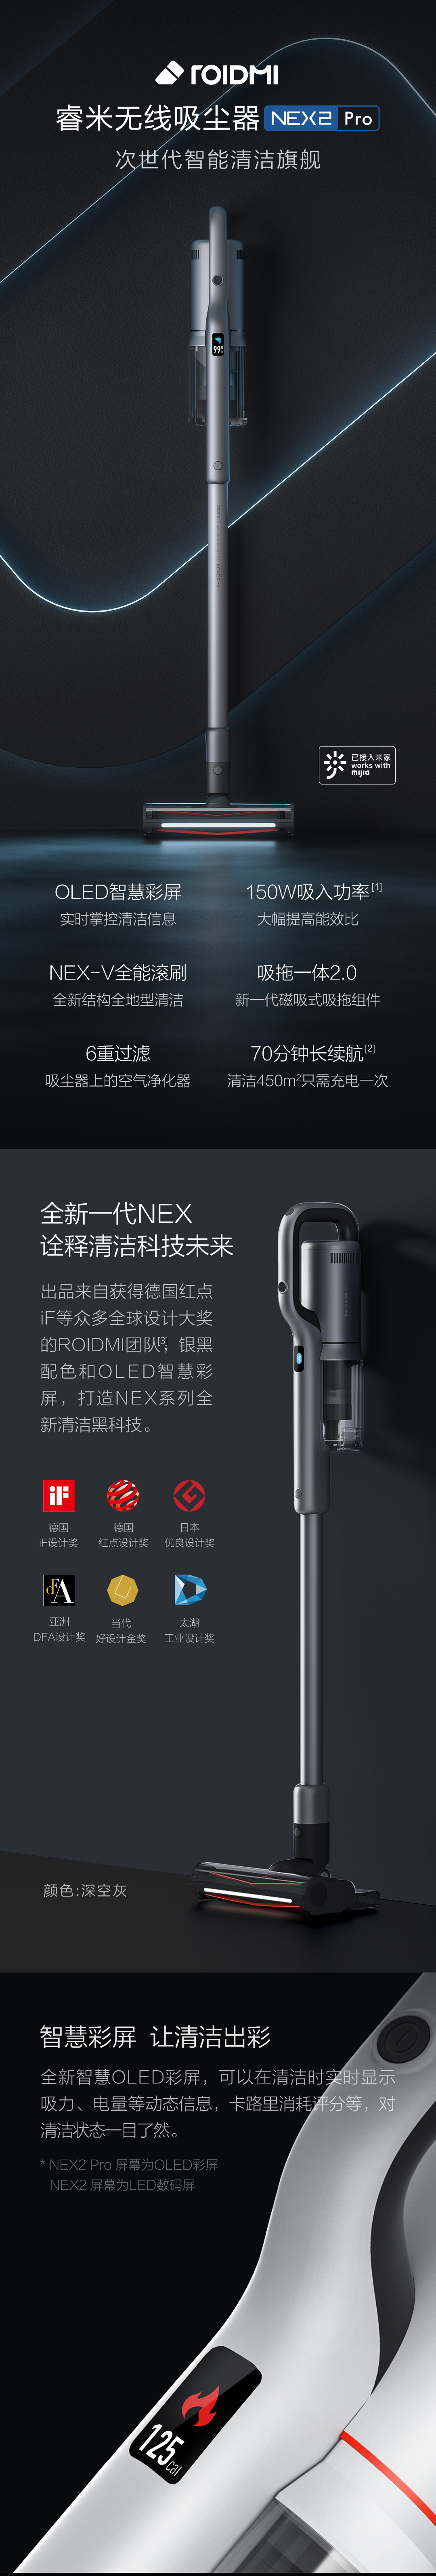 睿米无线吸尘器NEX 2 免费试用,评测